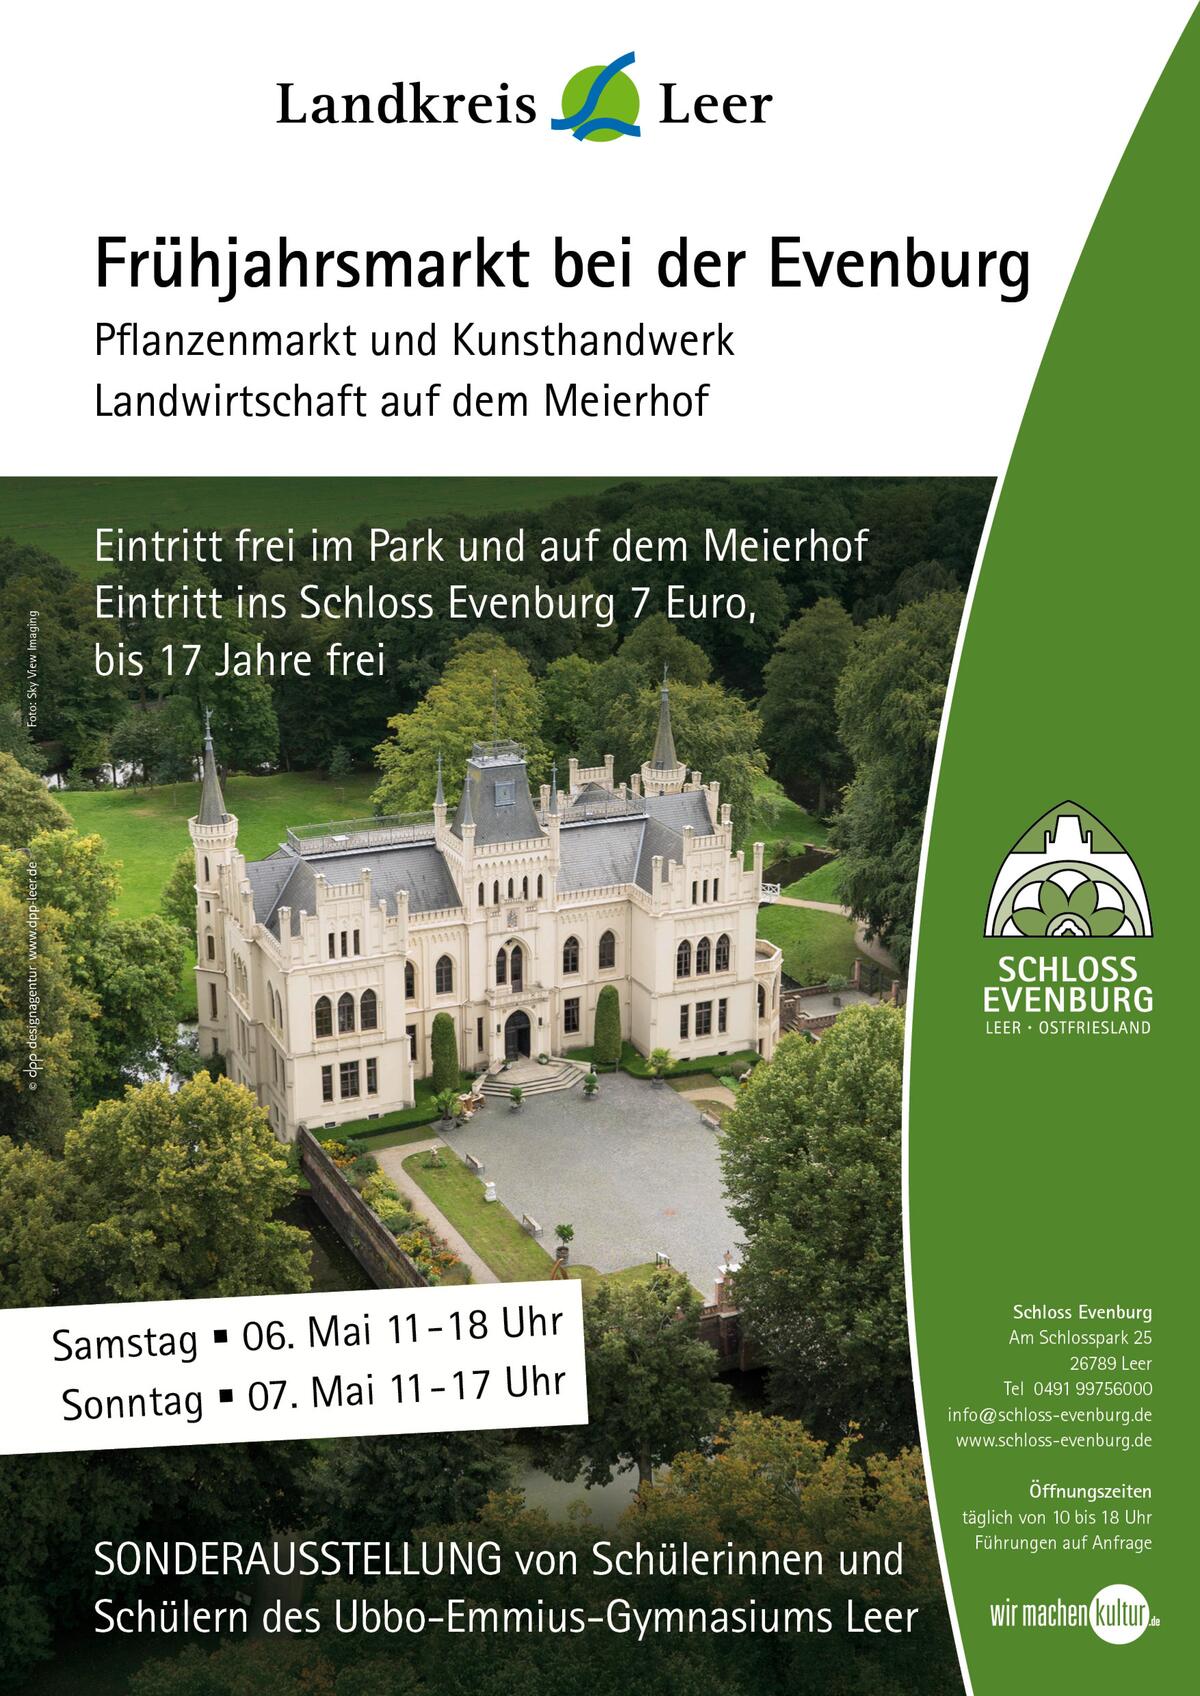 Bild vergrößern: Plakat zur Veranstaltung Frühjahrsmarkt bei der Evenburg am 6. Mai von 11 bis 18 Uhr und am 7. Mai von 11 bis 17 Uhr. Der Eintritt in den Park ist frei.